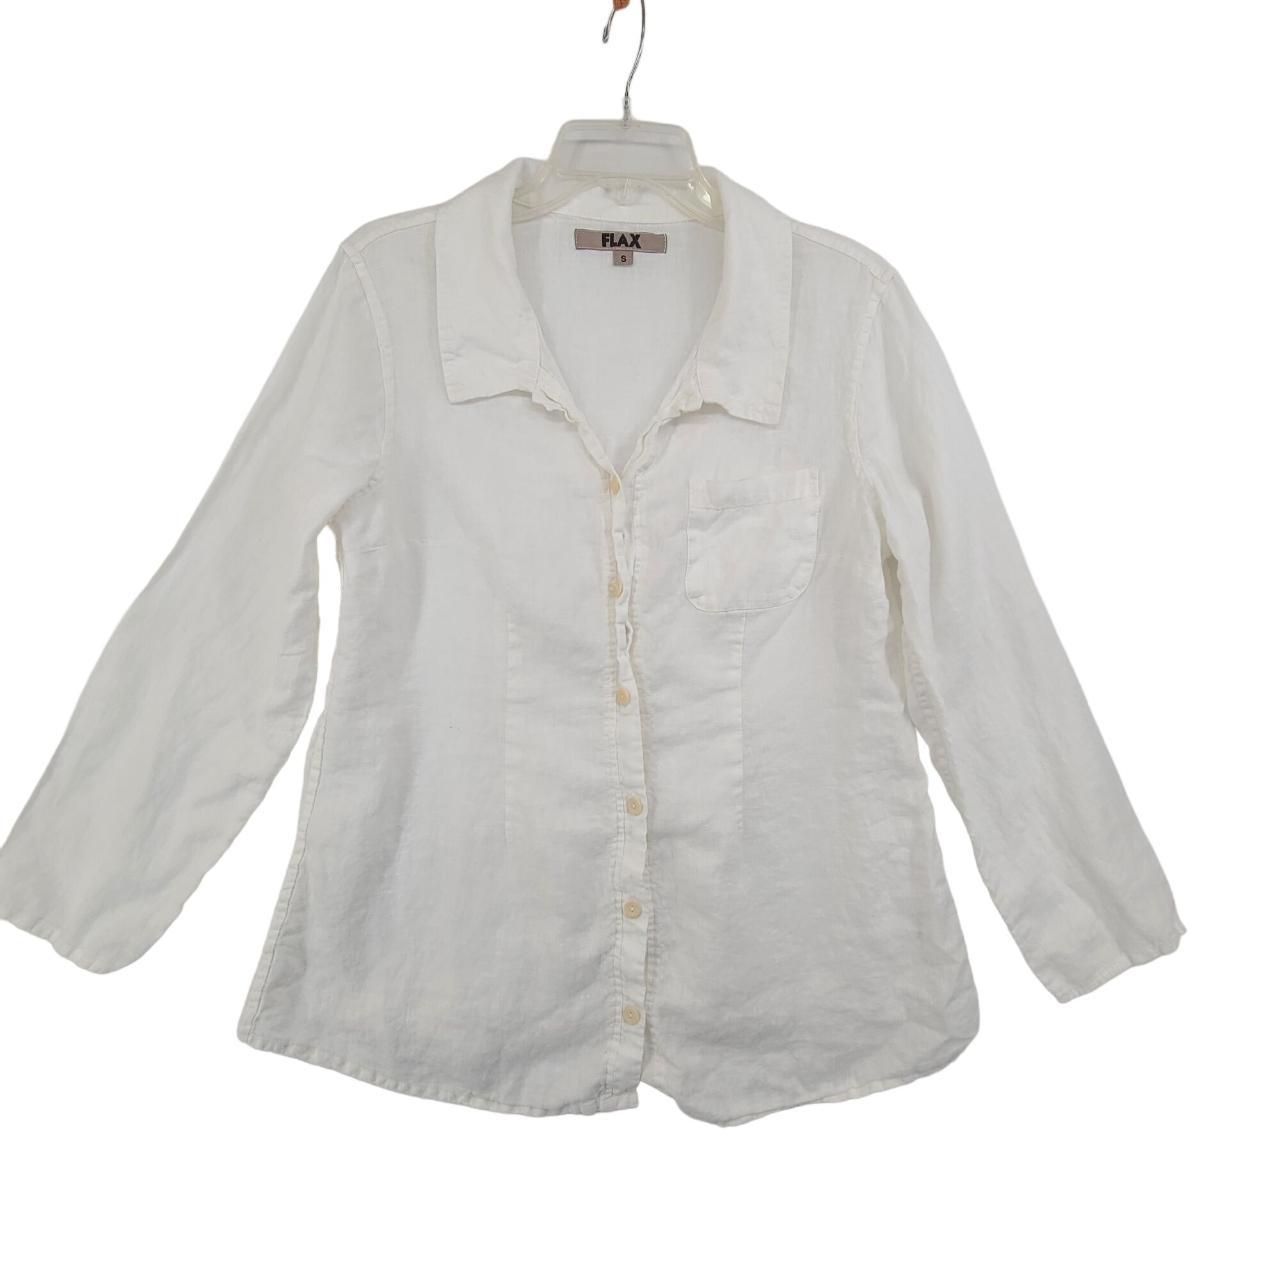 Flax Women's Long Sleeve Button Down Linen Shirt... - Depop